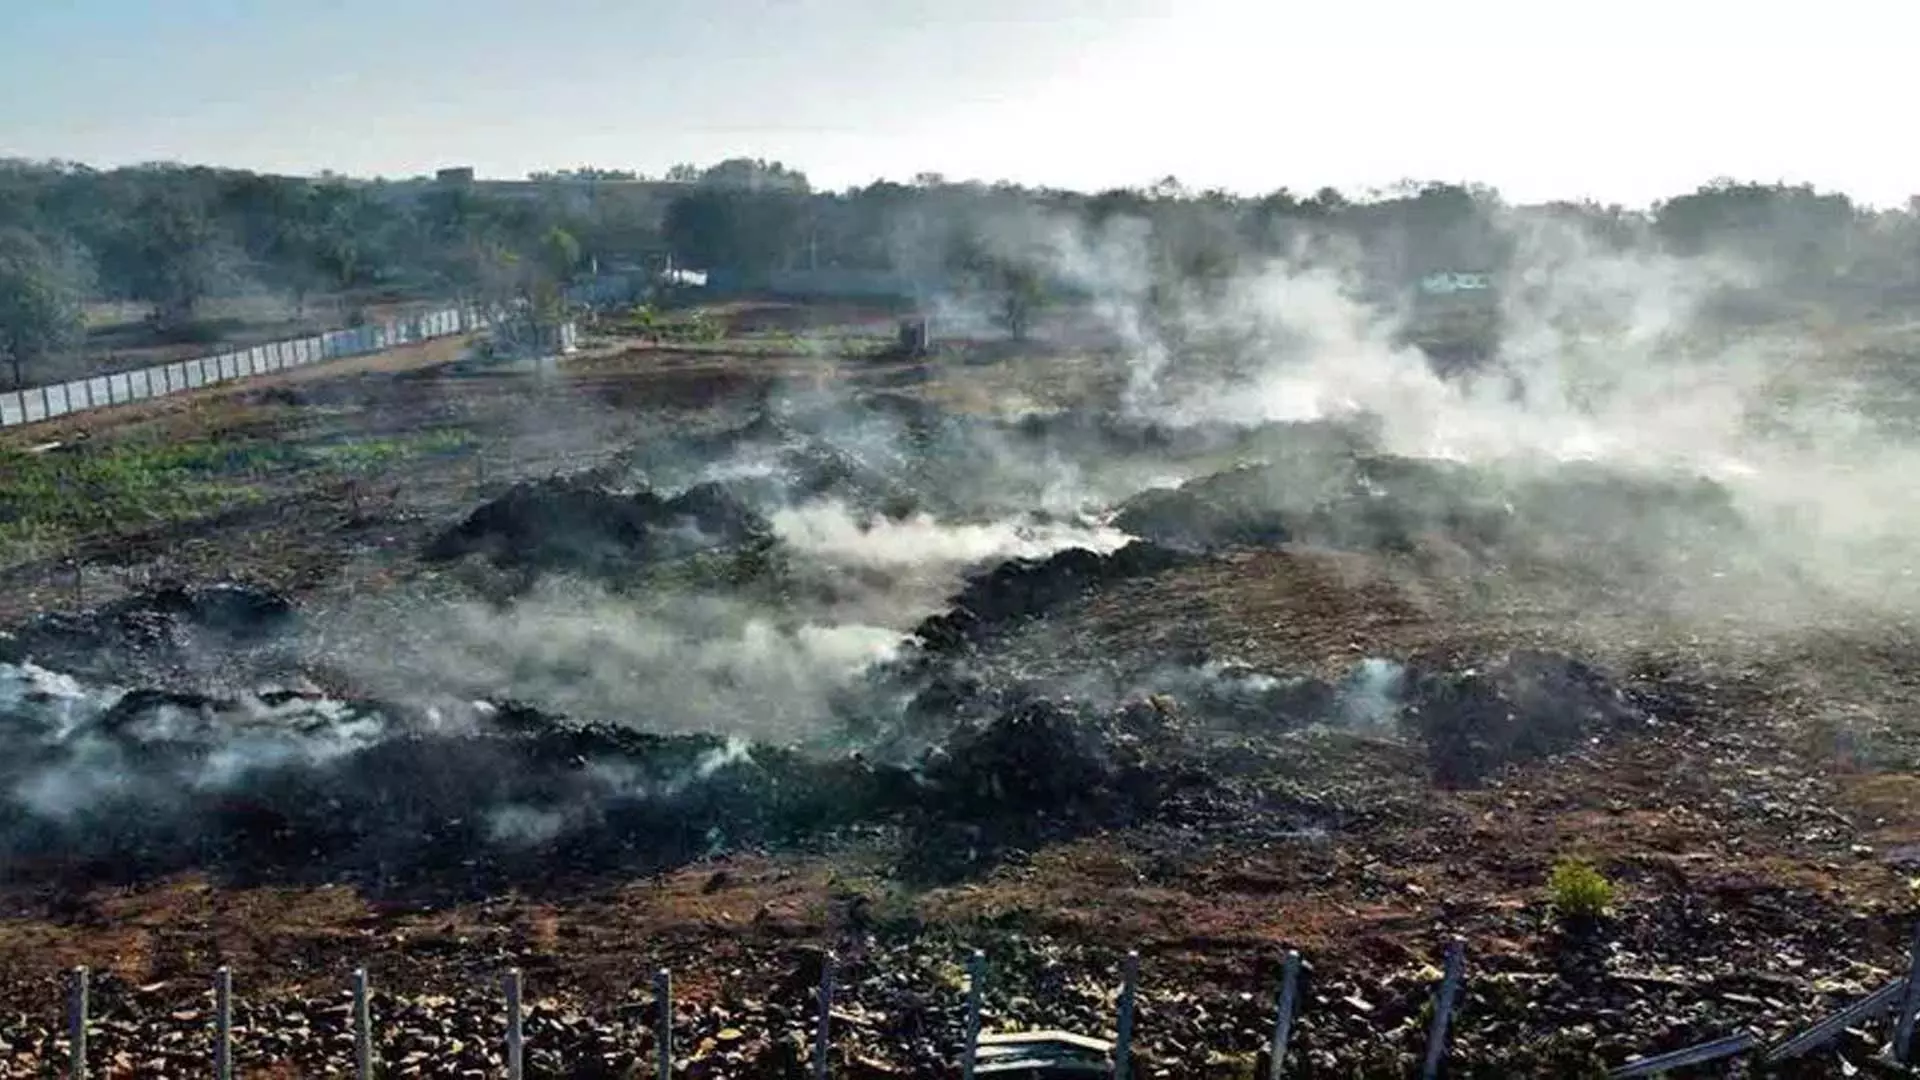 हैदराबाद: कूड़ा जलाने से निकलने वाले धुएं से जान जोखिम में पड़ जाती